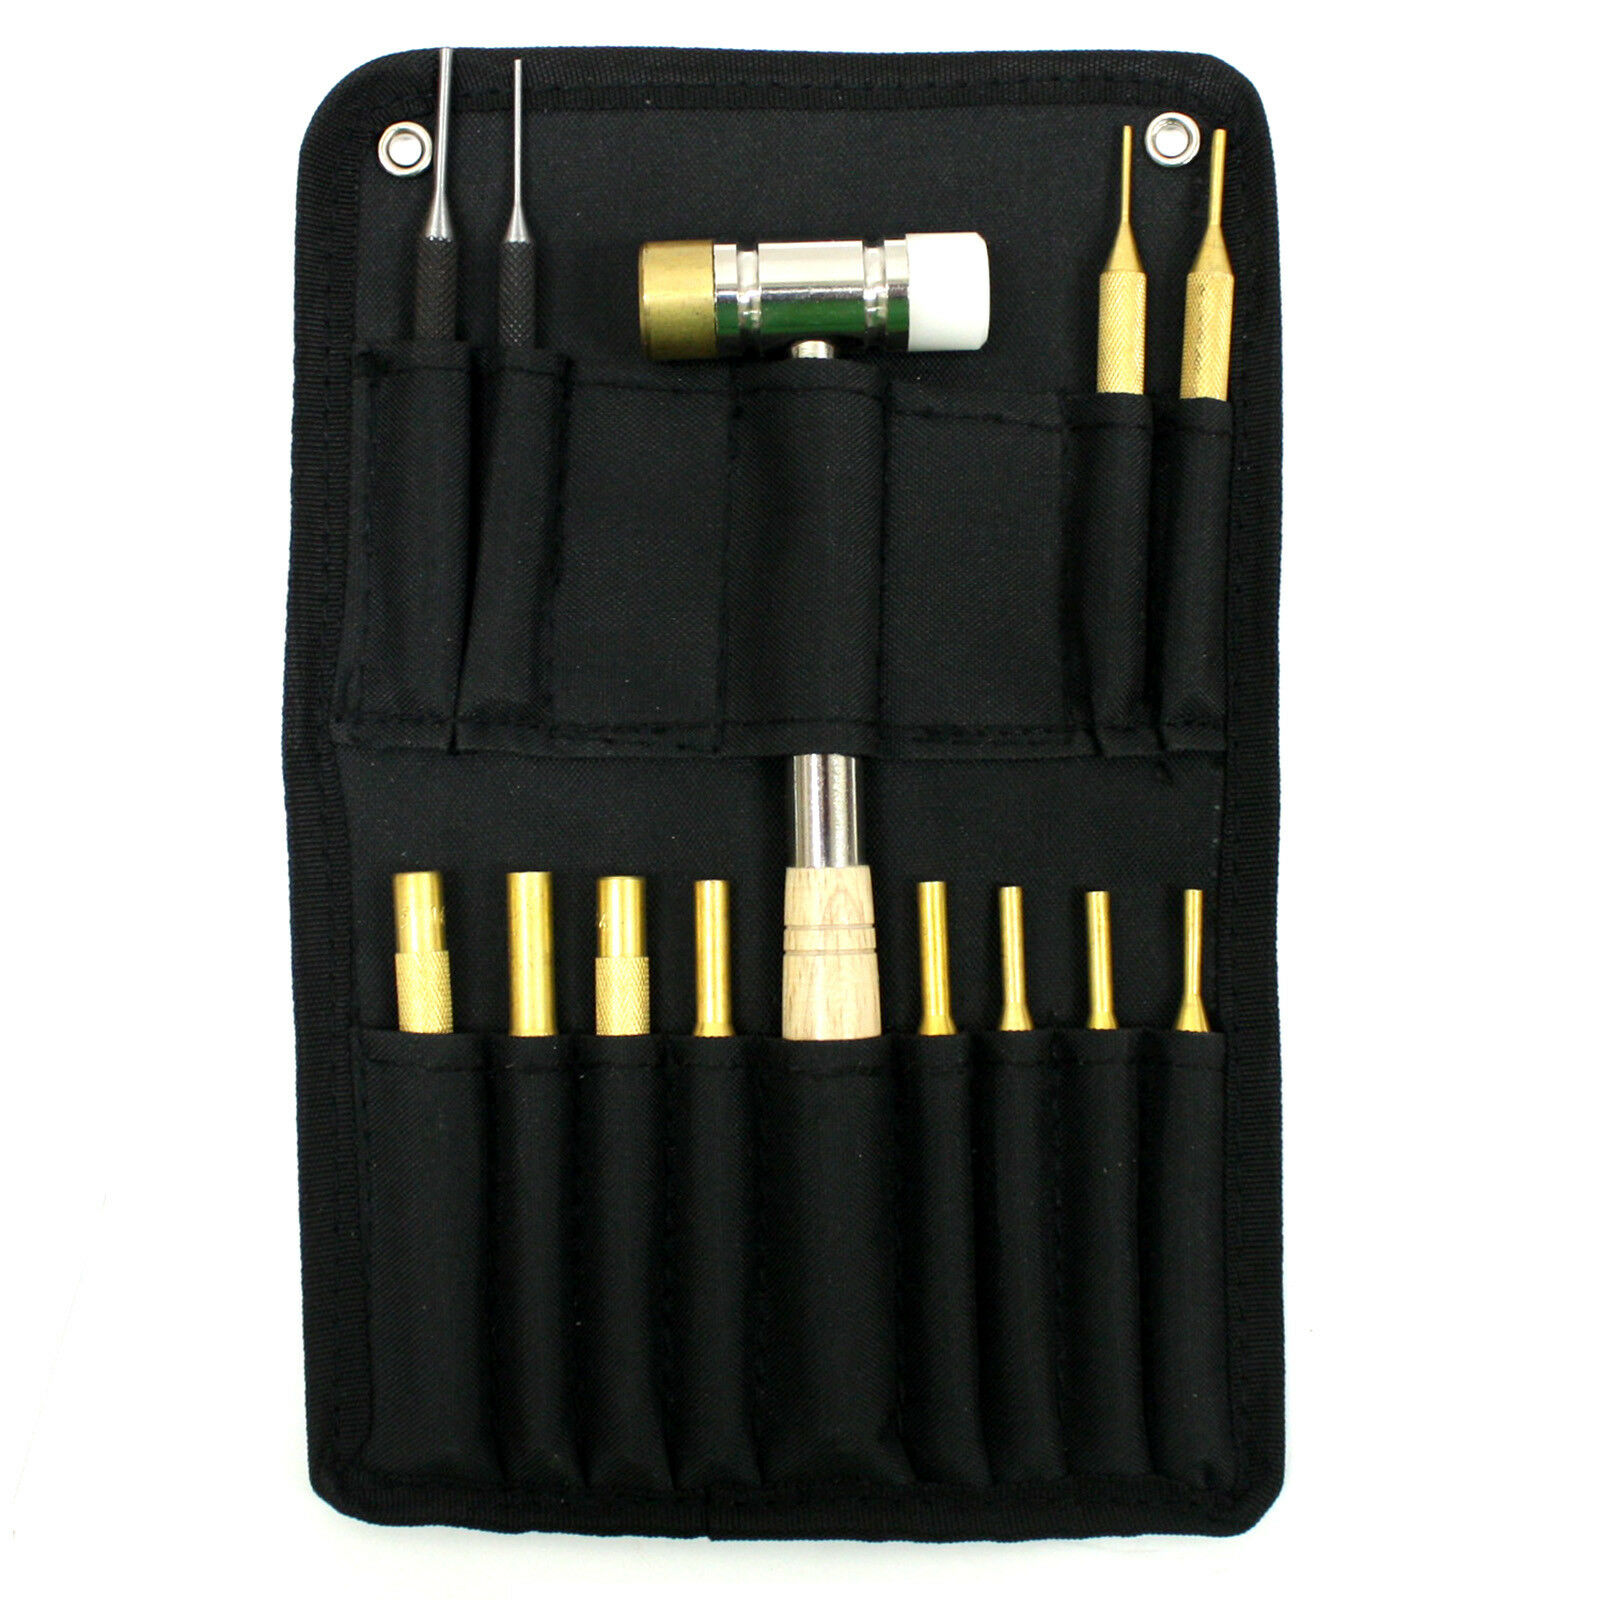 6pc Universal Cleaning Kit Brushes Gun Rifle Pistol  Maintenance Tool 